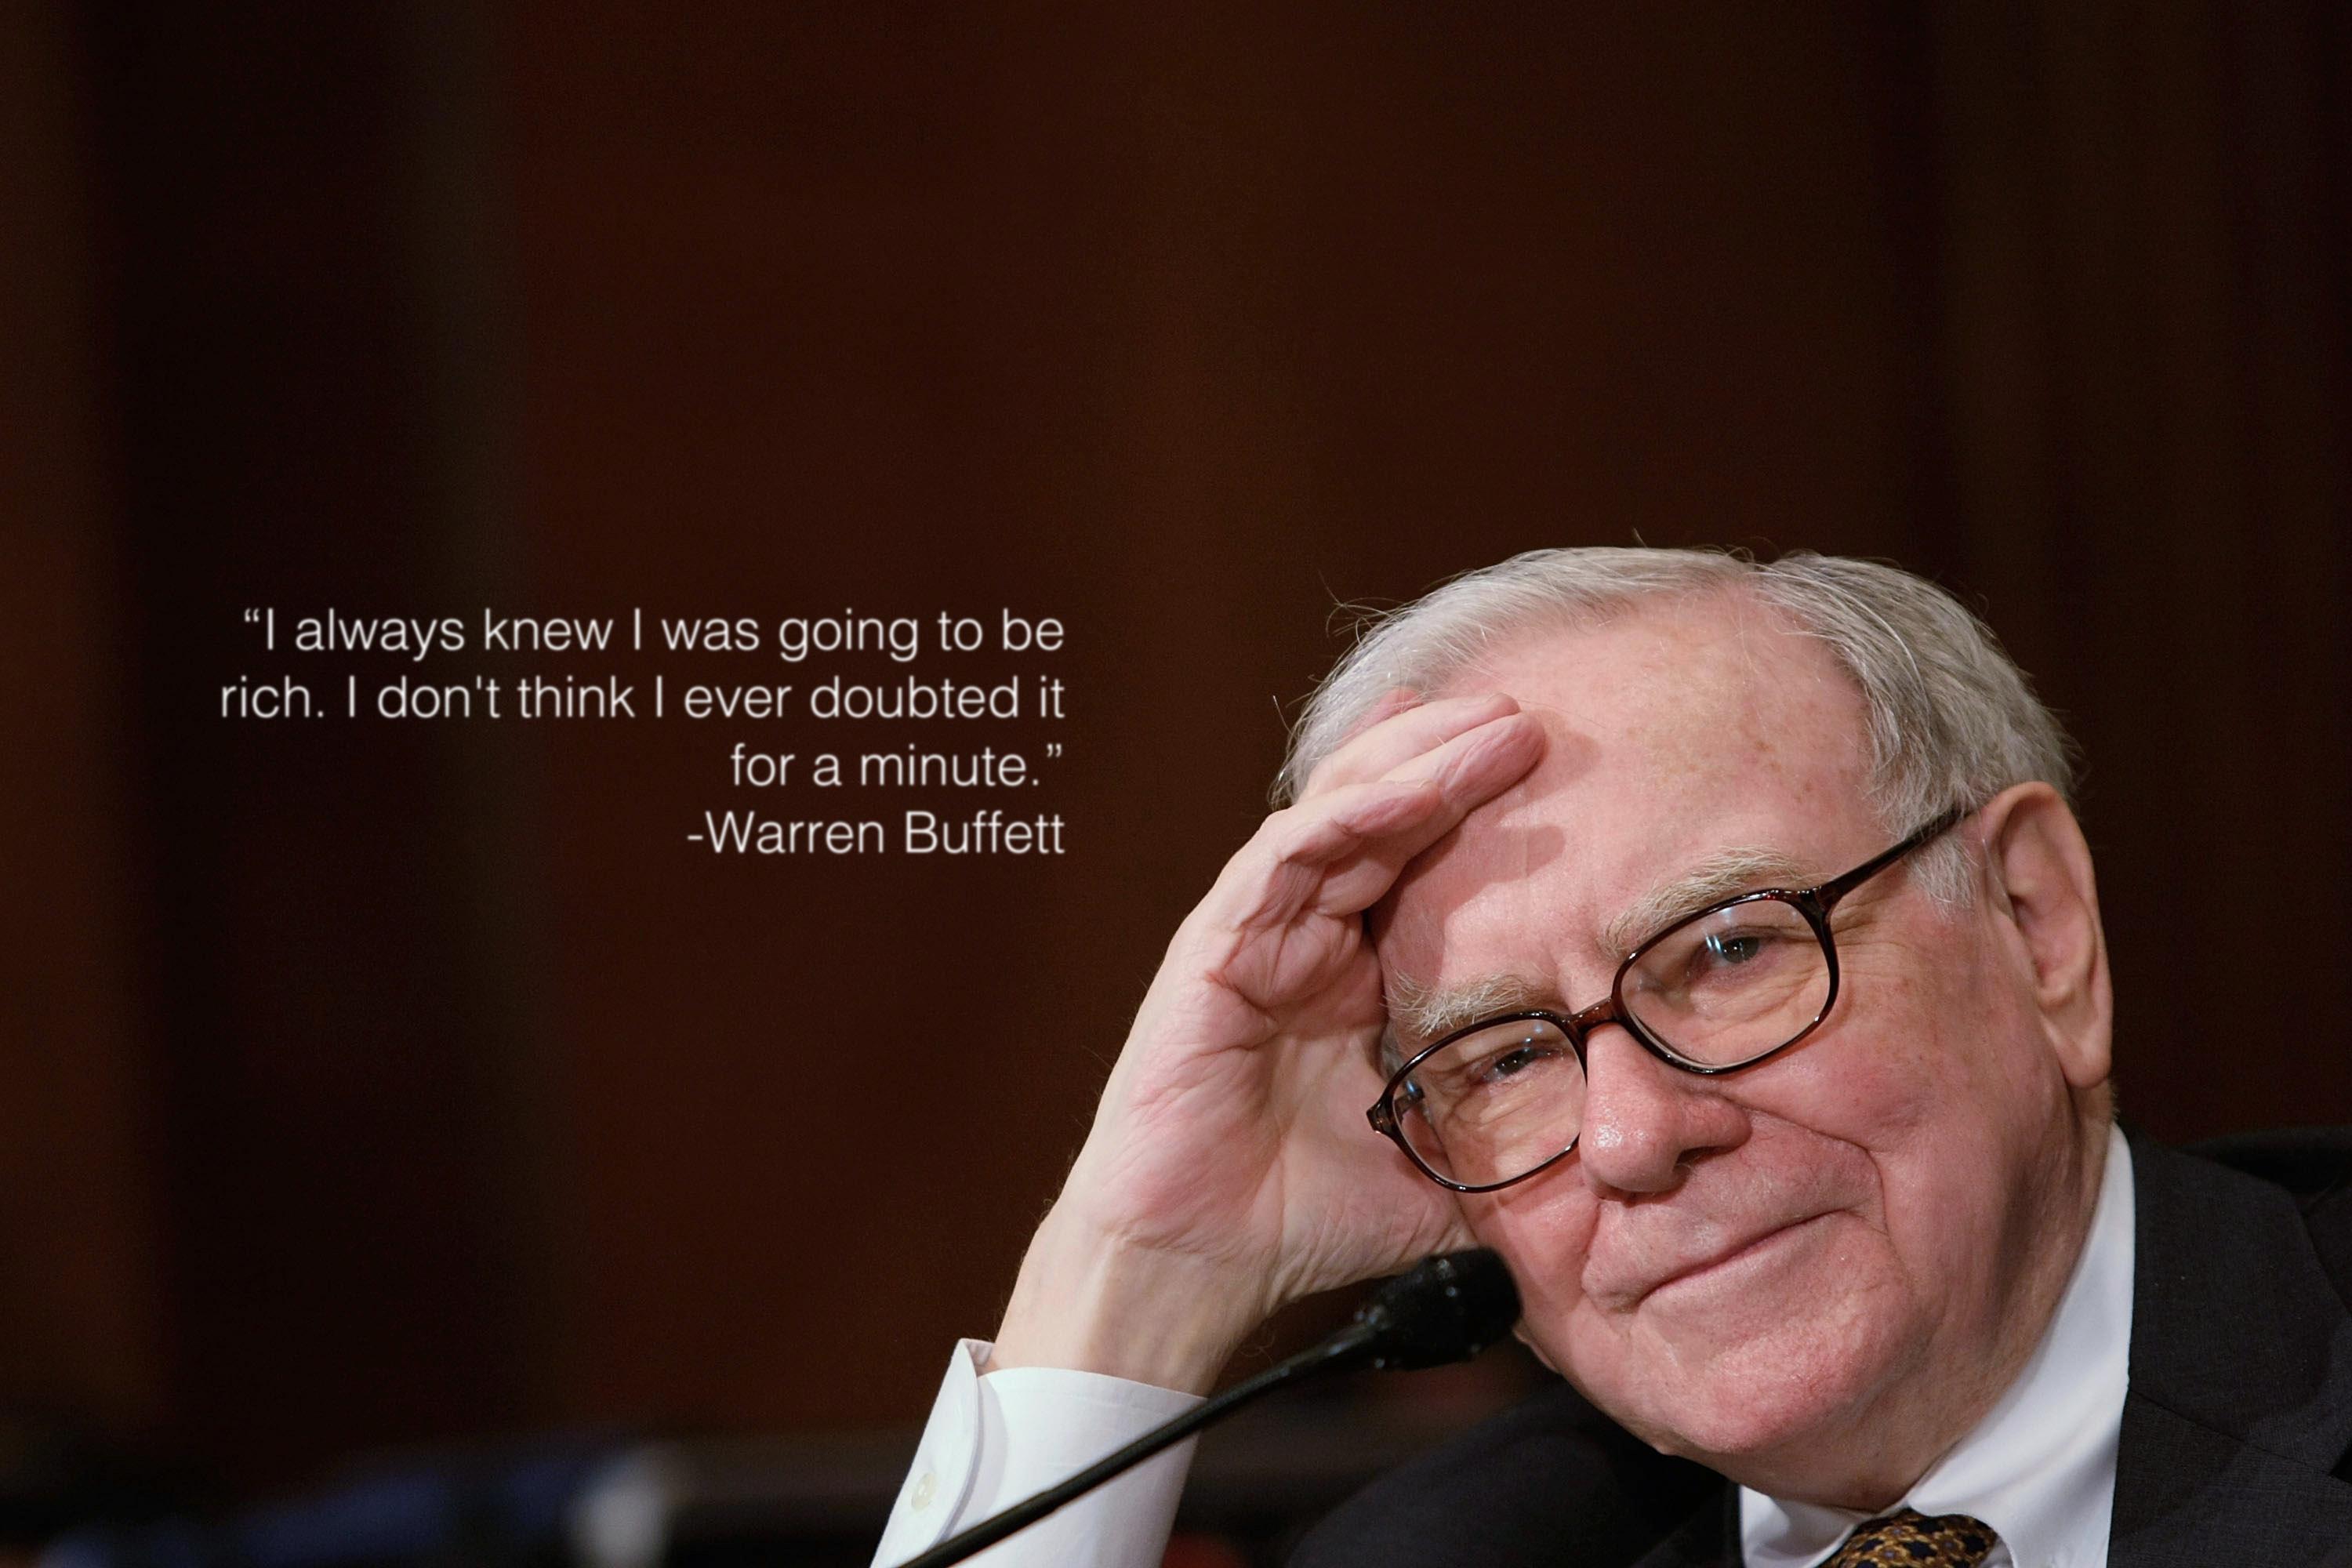 Warren Buffett Quotes Wallpapers - Top Free Warren Buffett Quotes